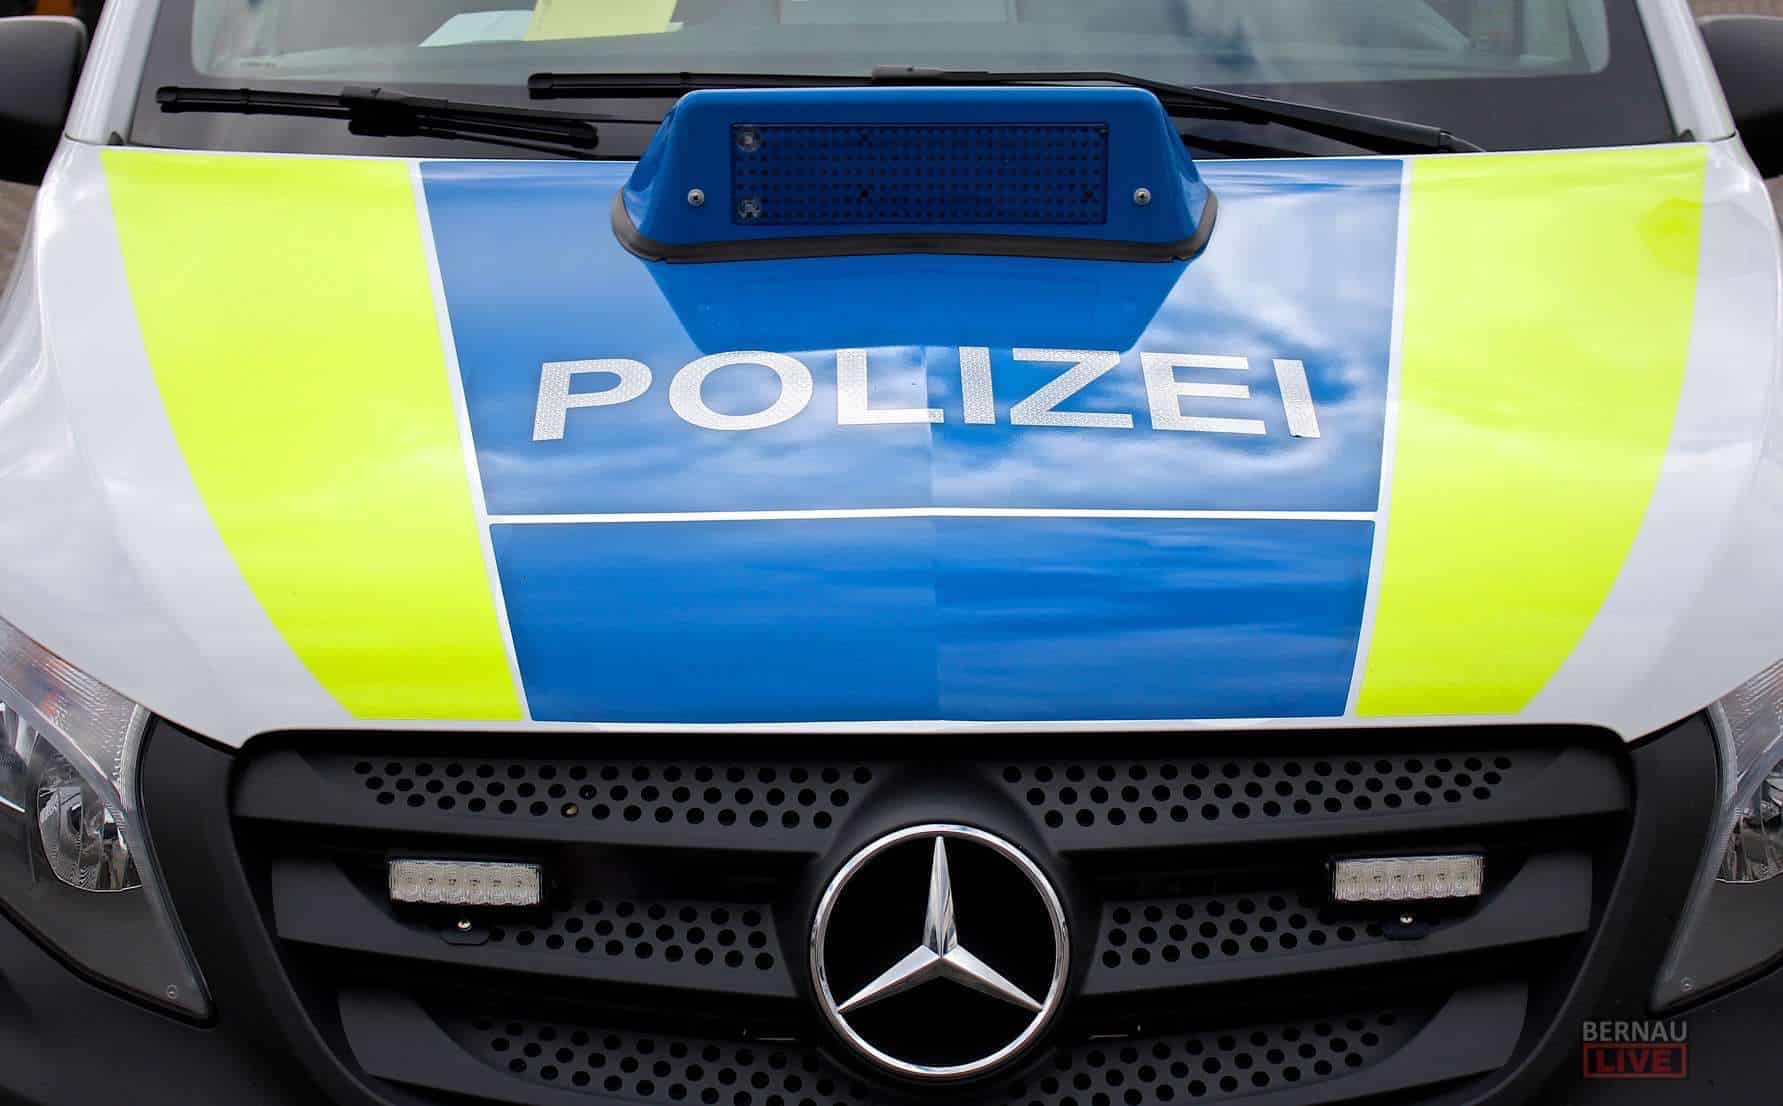 Unbelehrbar: Gleich 2 Mal besoffen am Steuer in Bernau angetroffen